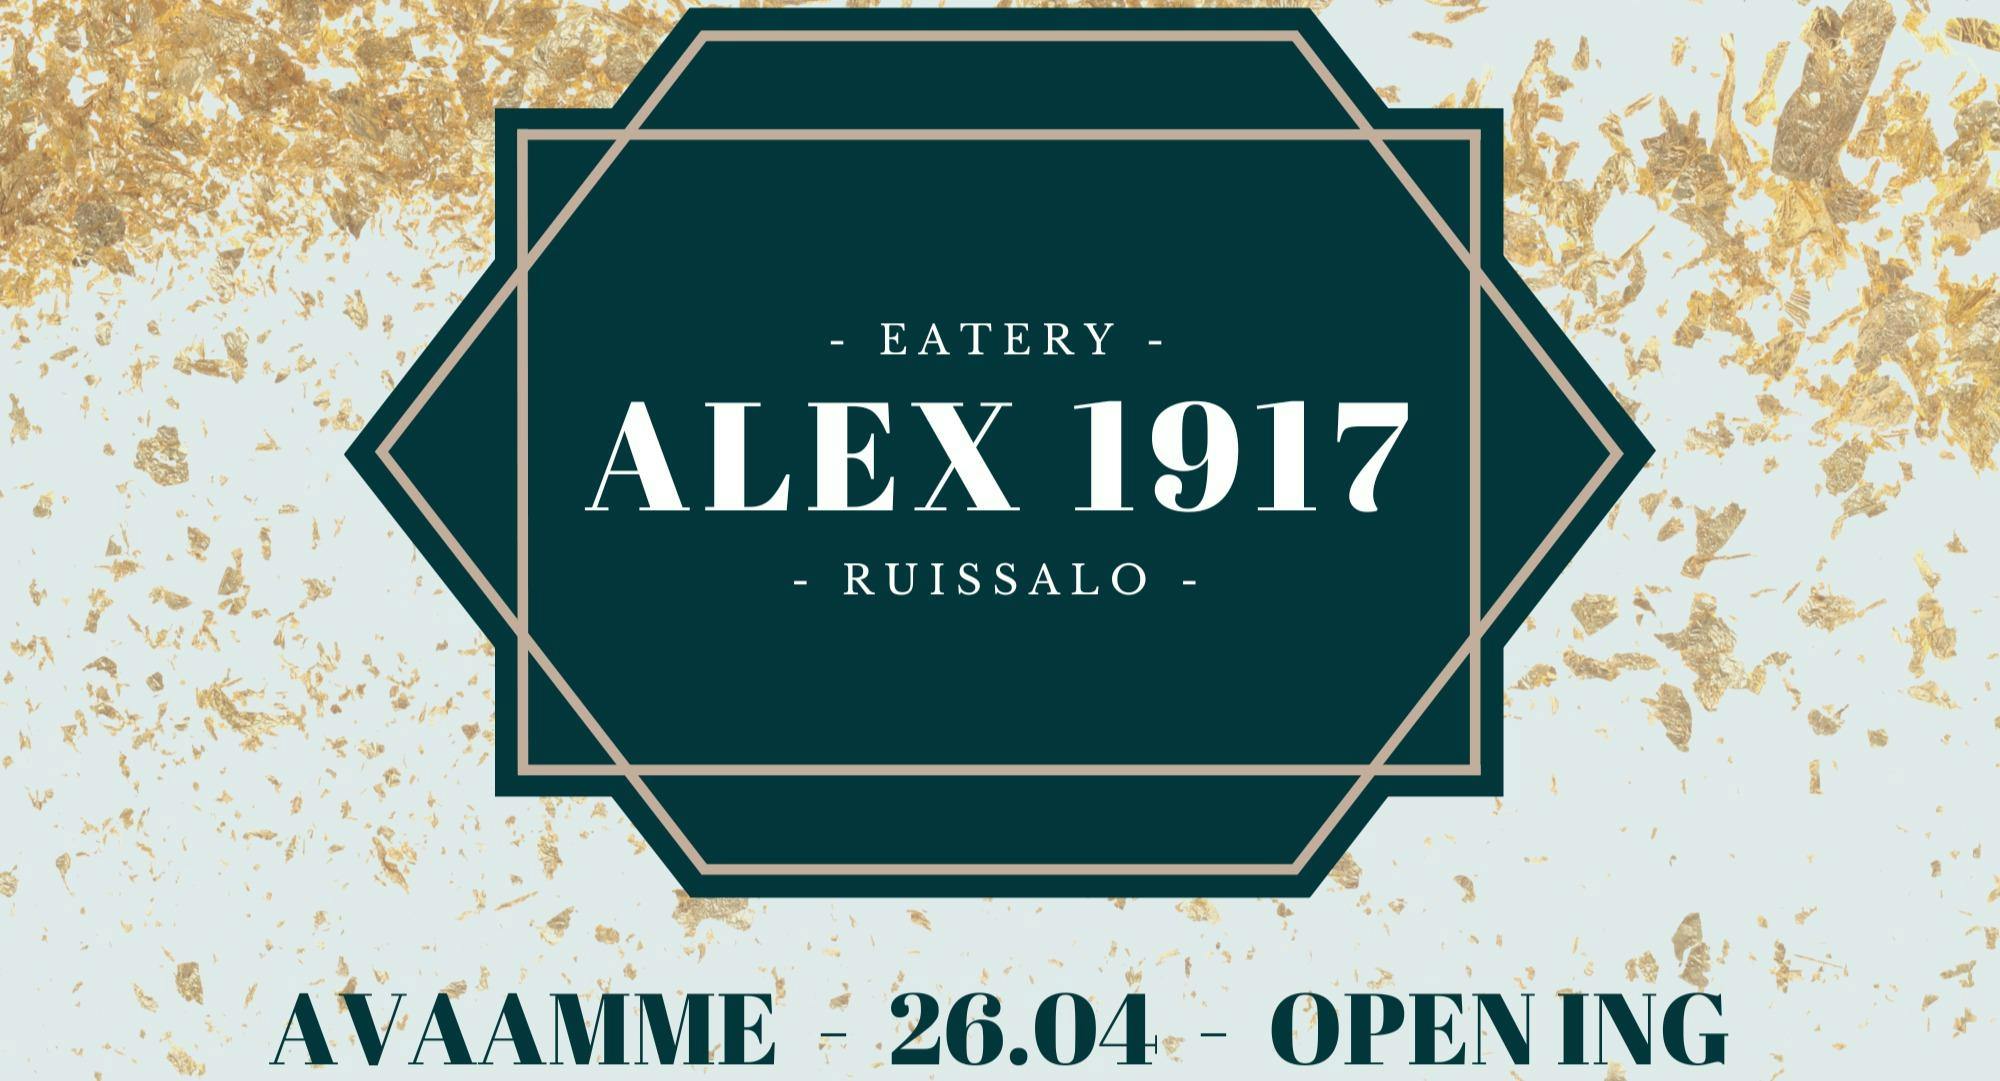 Kuva kohteesta Eatery Alex 1917, Ruissalo, Turku